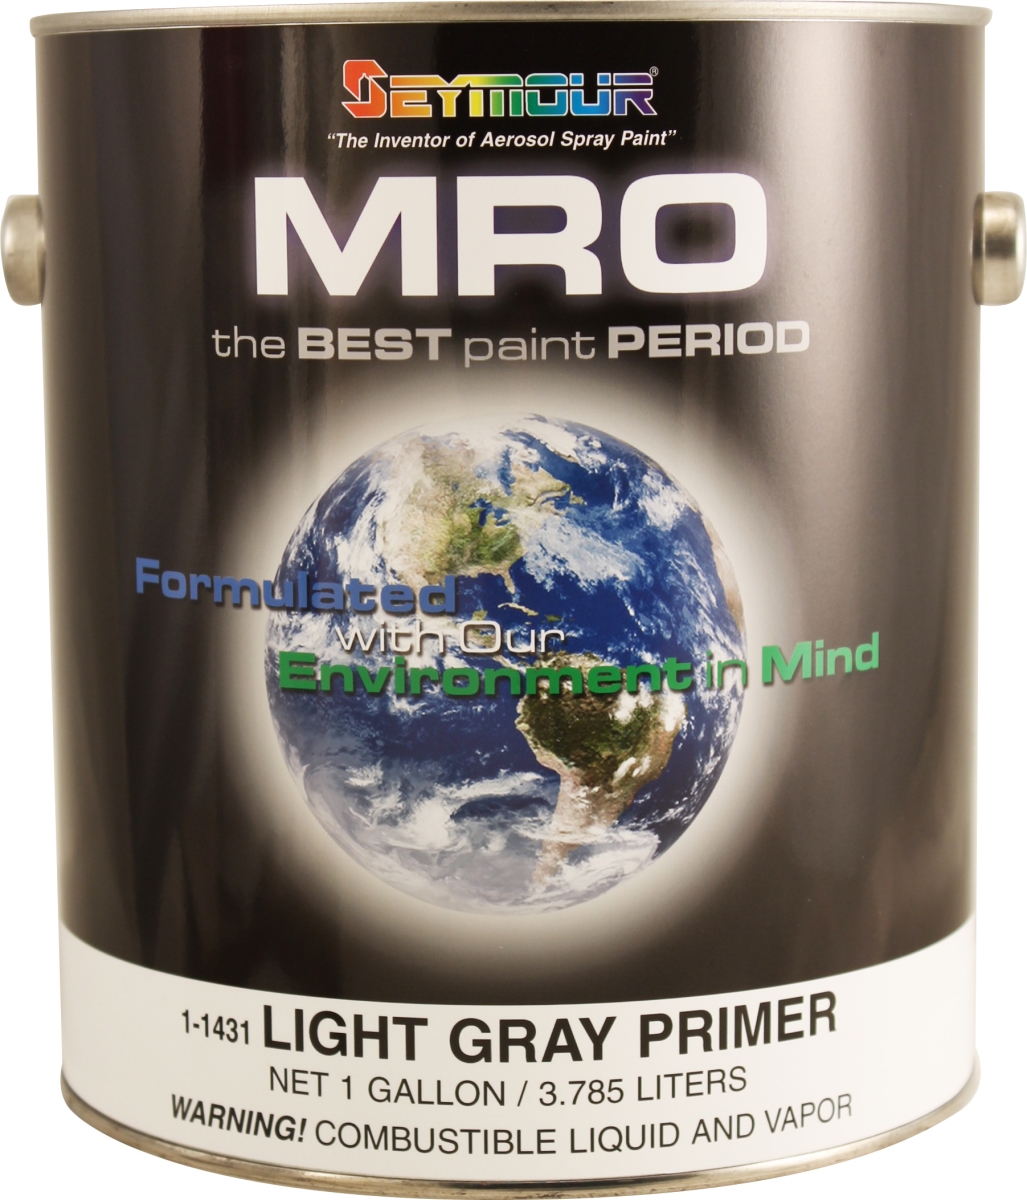 1-1431 1 Gal Mro Industrial Coatings Enamel Paint, Light Gray Primer - Pack Of 4